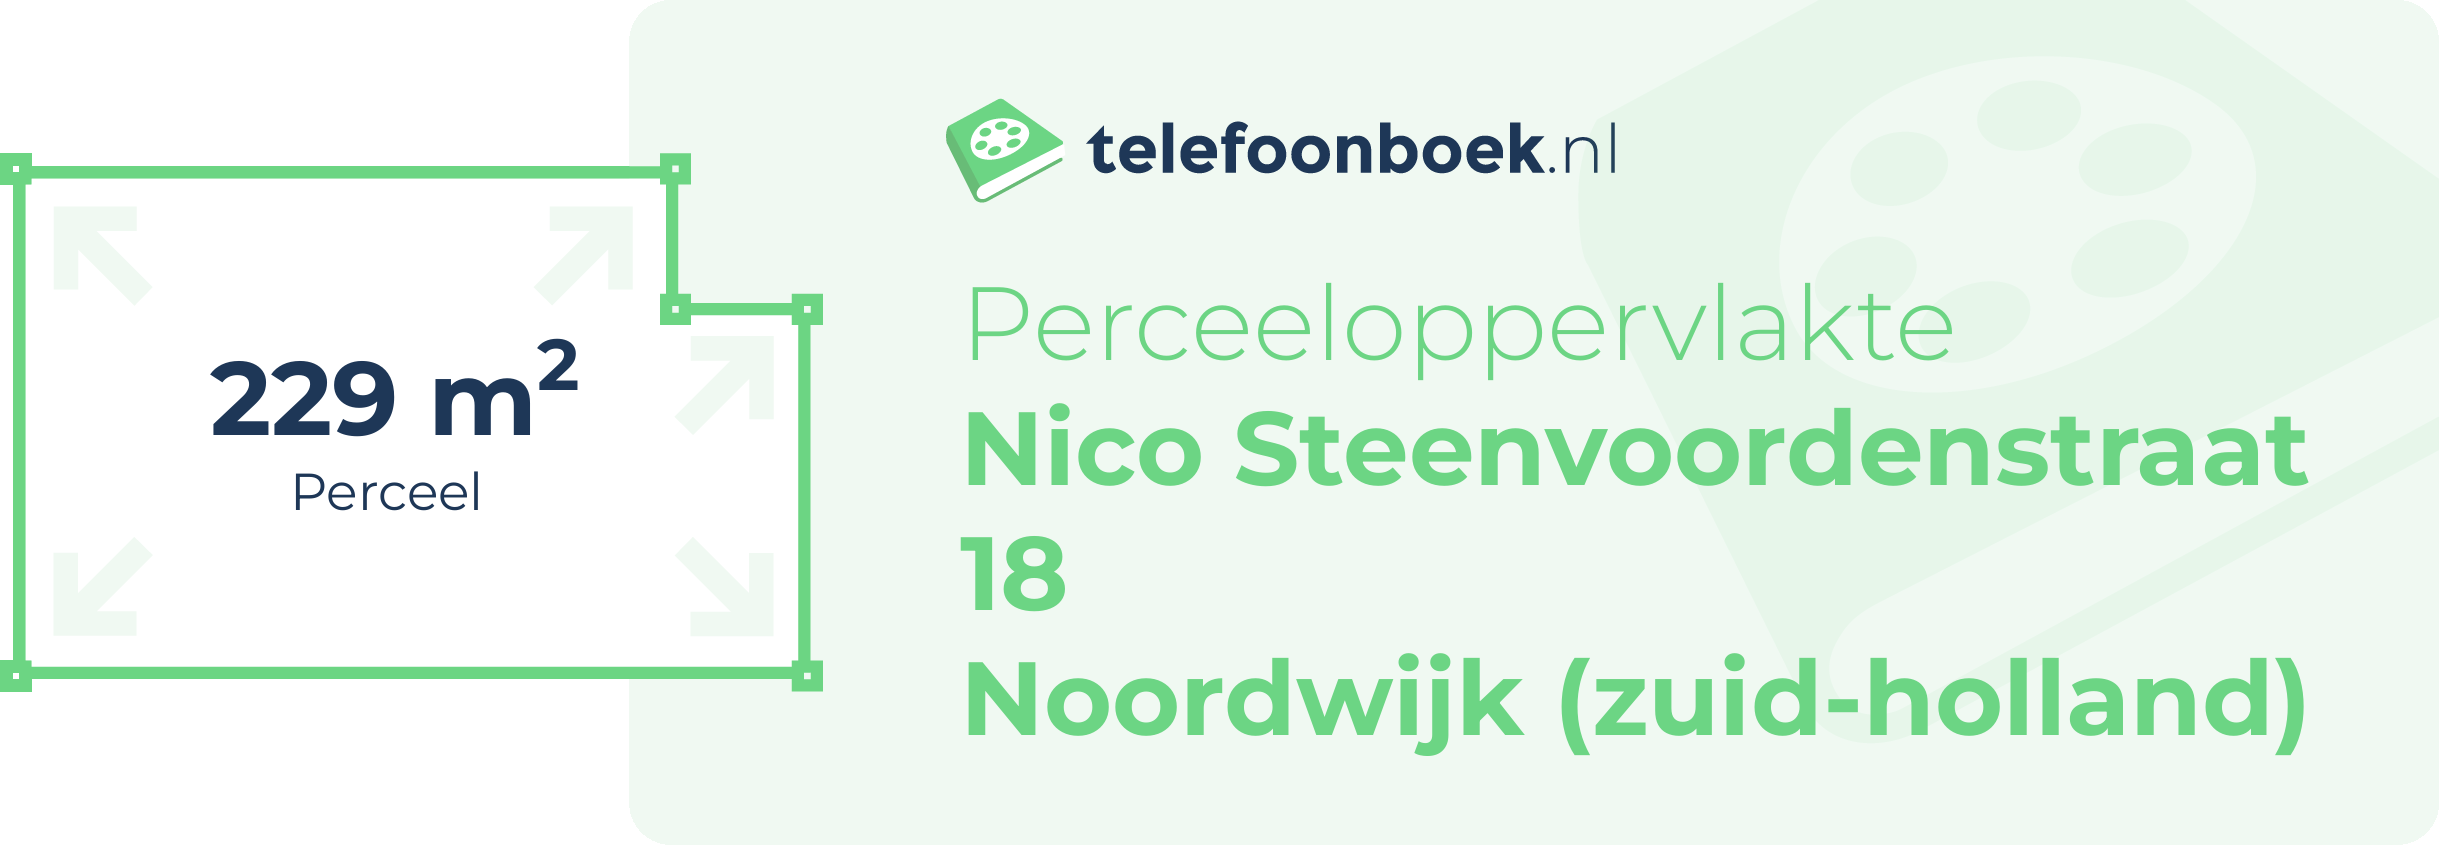 Perceeloppervlakte Nico Steenvoordenstraat 18 Noordwijk (Zuid-Holland)